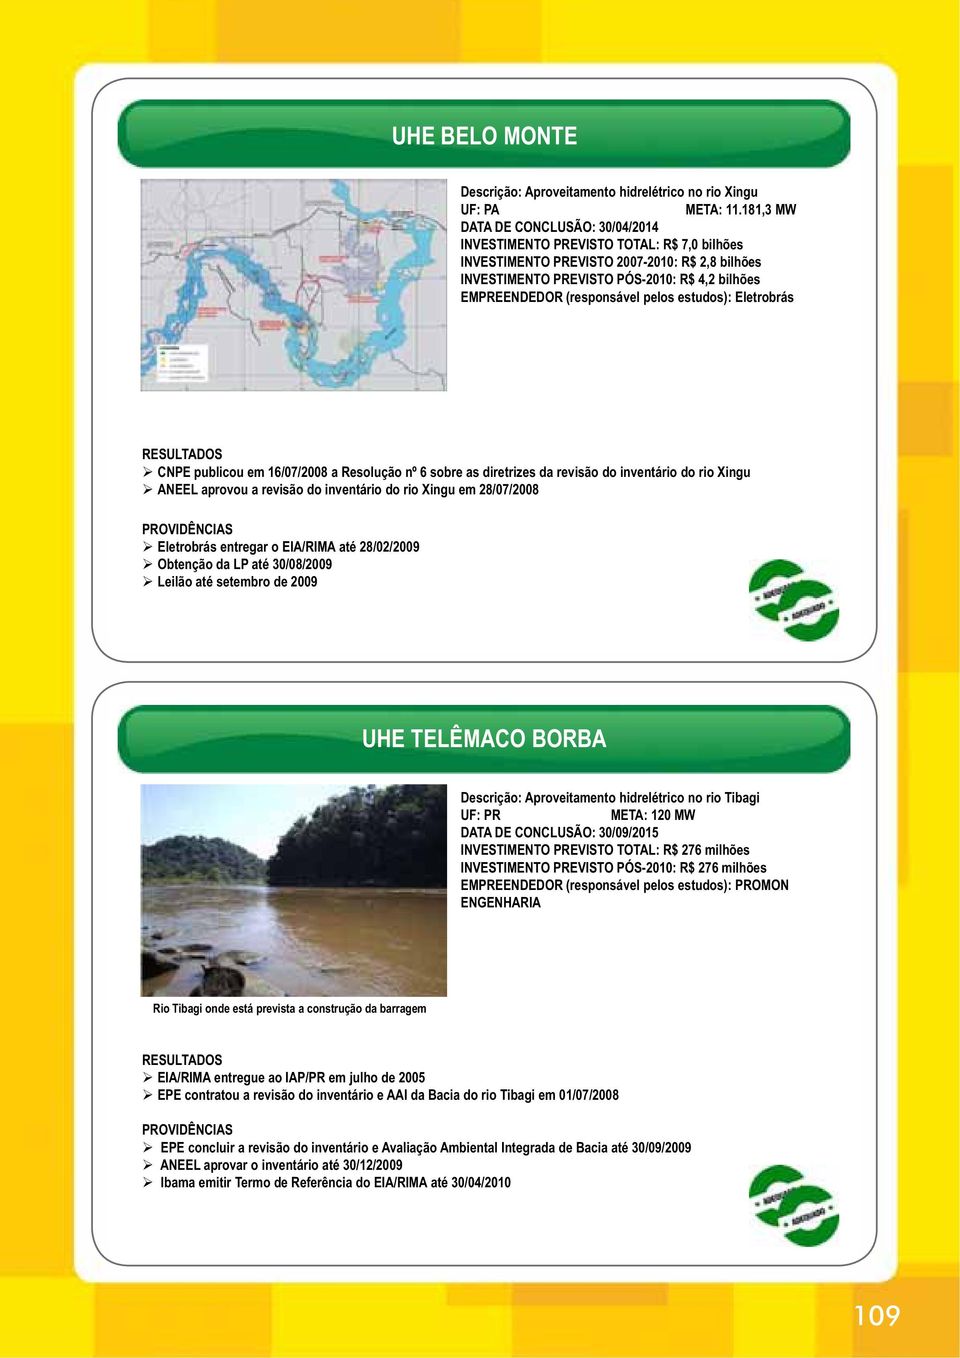 (responsável pelos estudos): Eletrobrás CNPE publicou em 16/07/2008 a Resolução nº 6 sobre as diretrizes da revisão do inventário do rio Xingu ANEEL aprovou a revisão do inventário do rio Xingu em